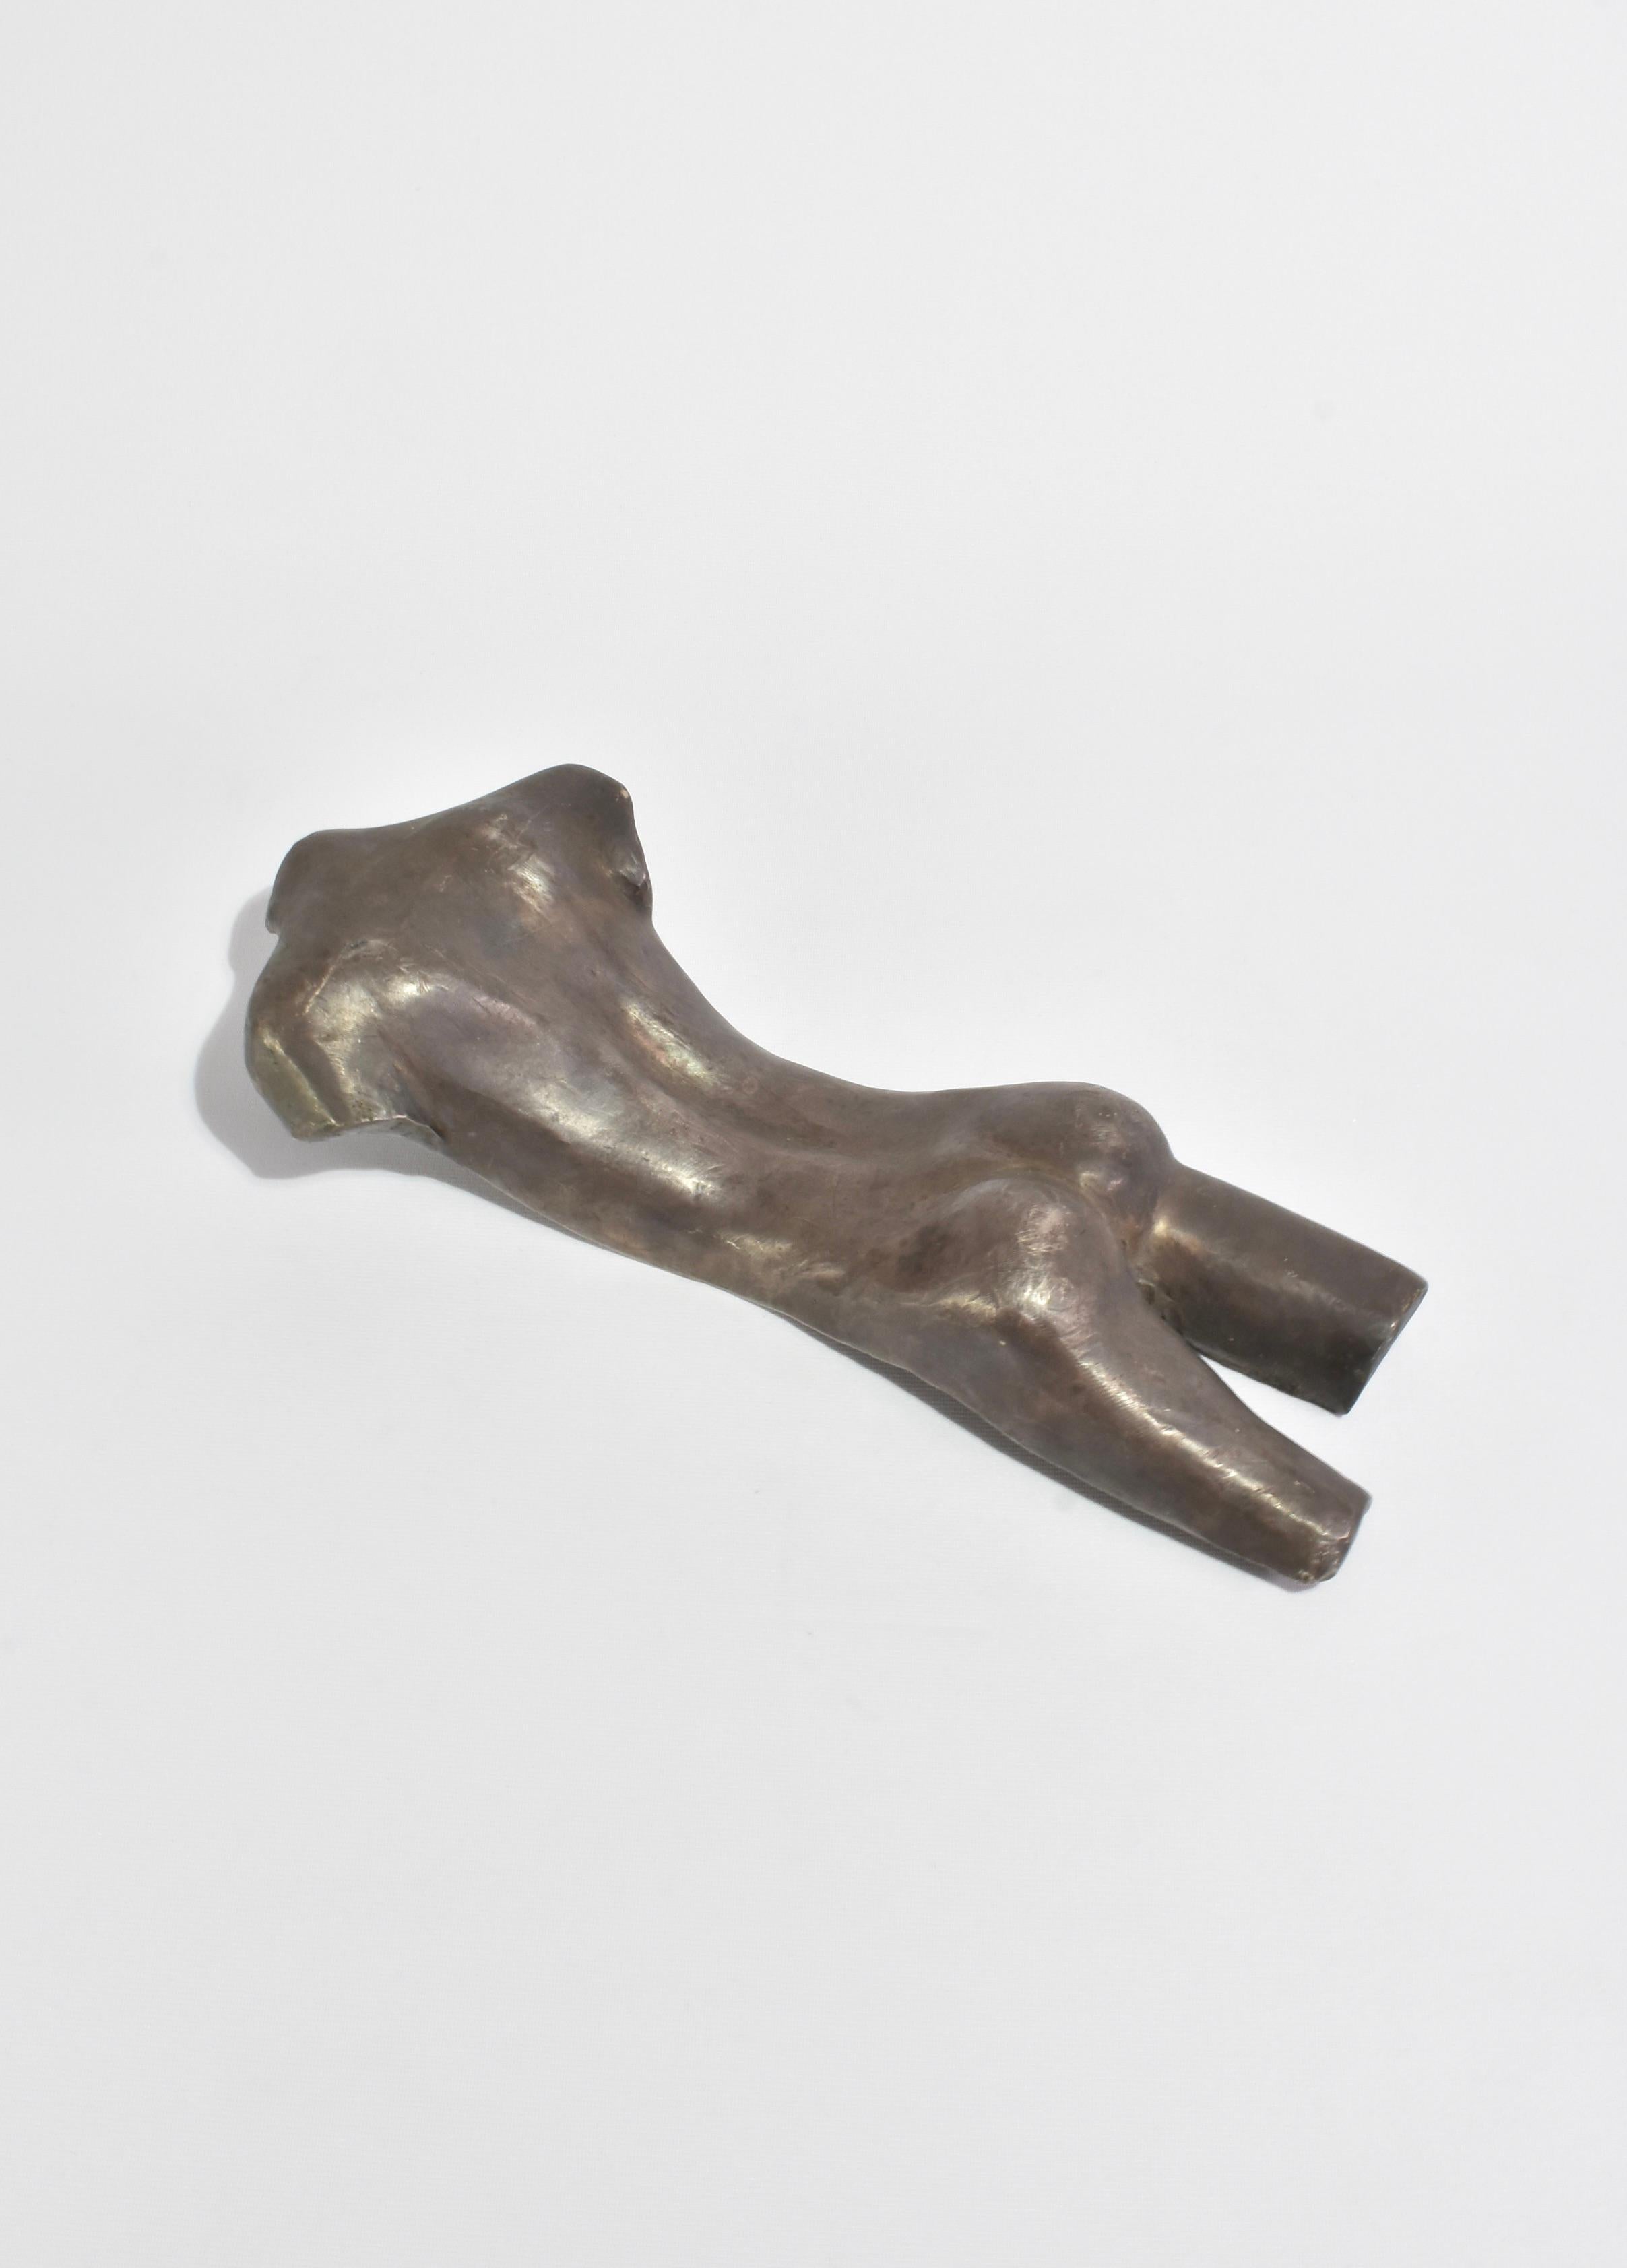 Superbe sculpture de torse en métal moulé, faite à la main, avec une vis de fixation sur la face inférieure.